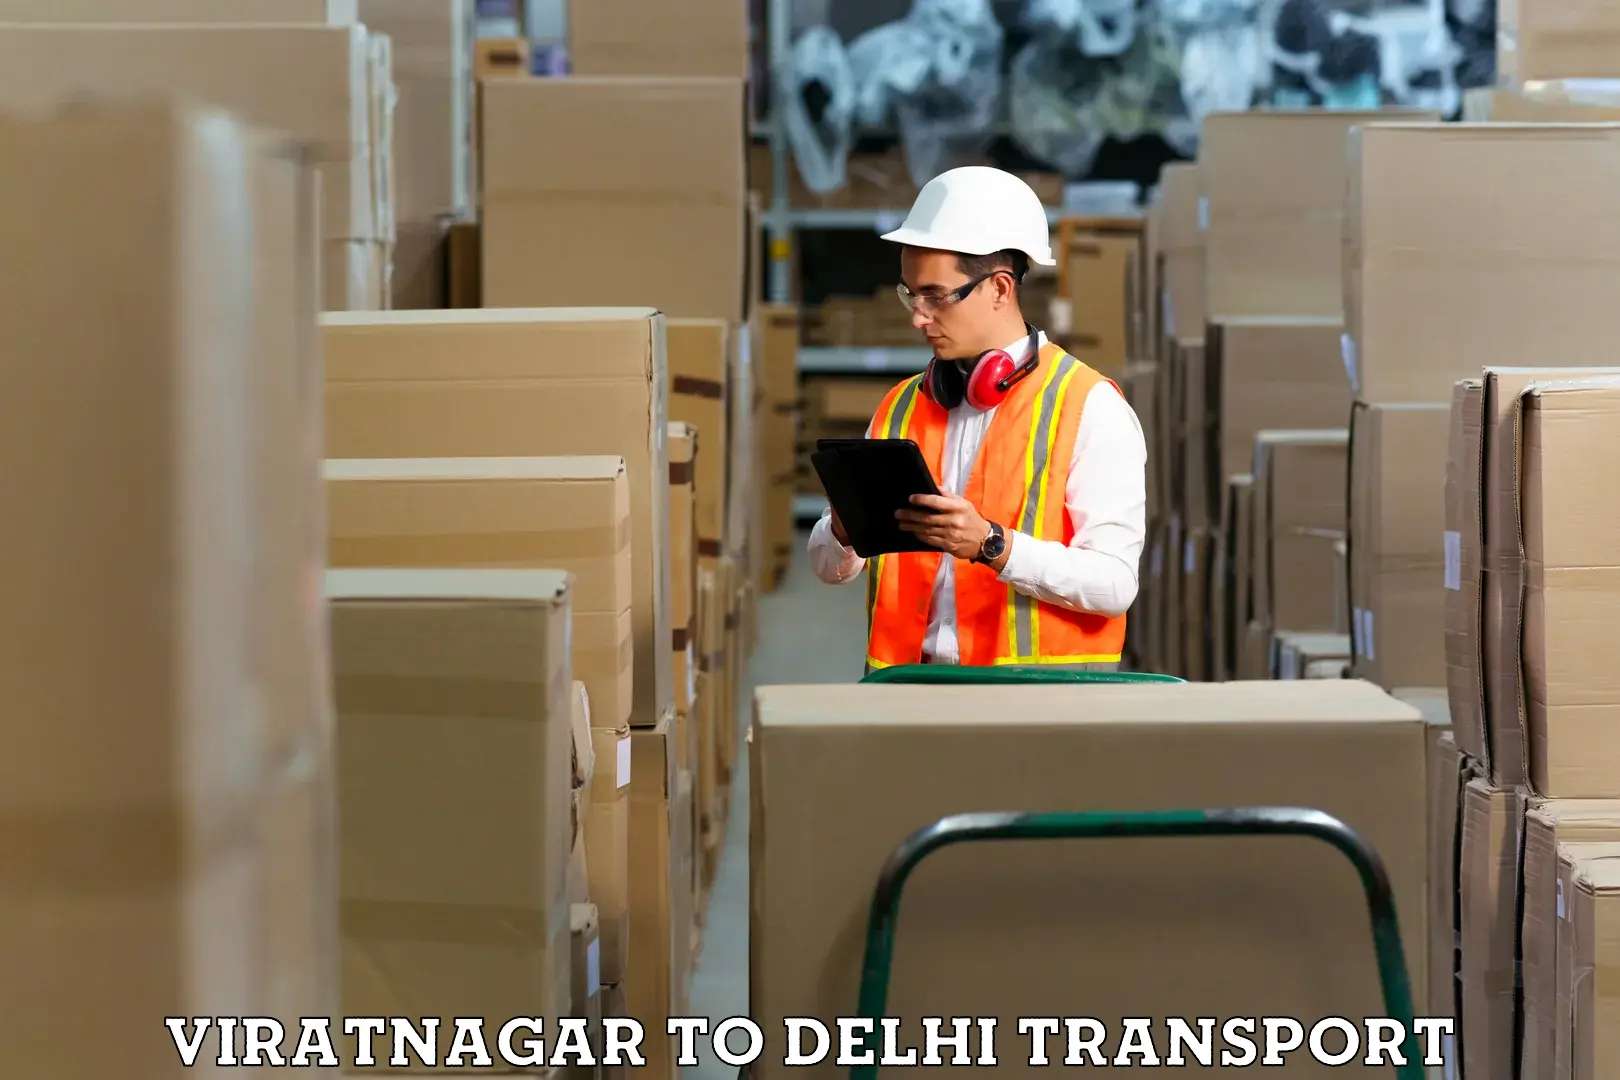 Express transport services Viratnagar to University of Delhi